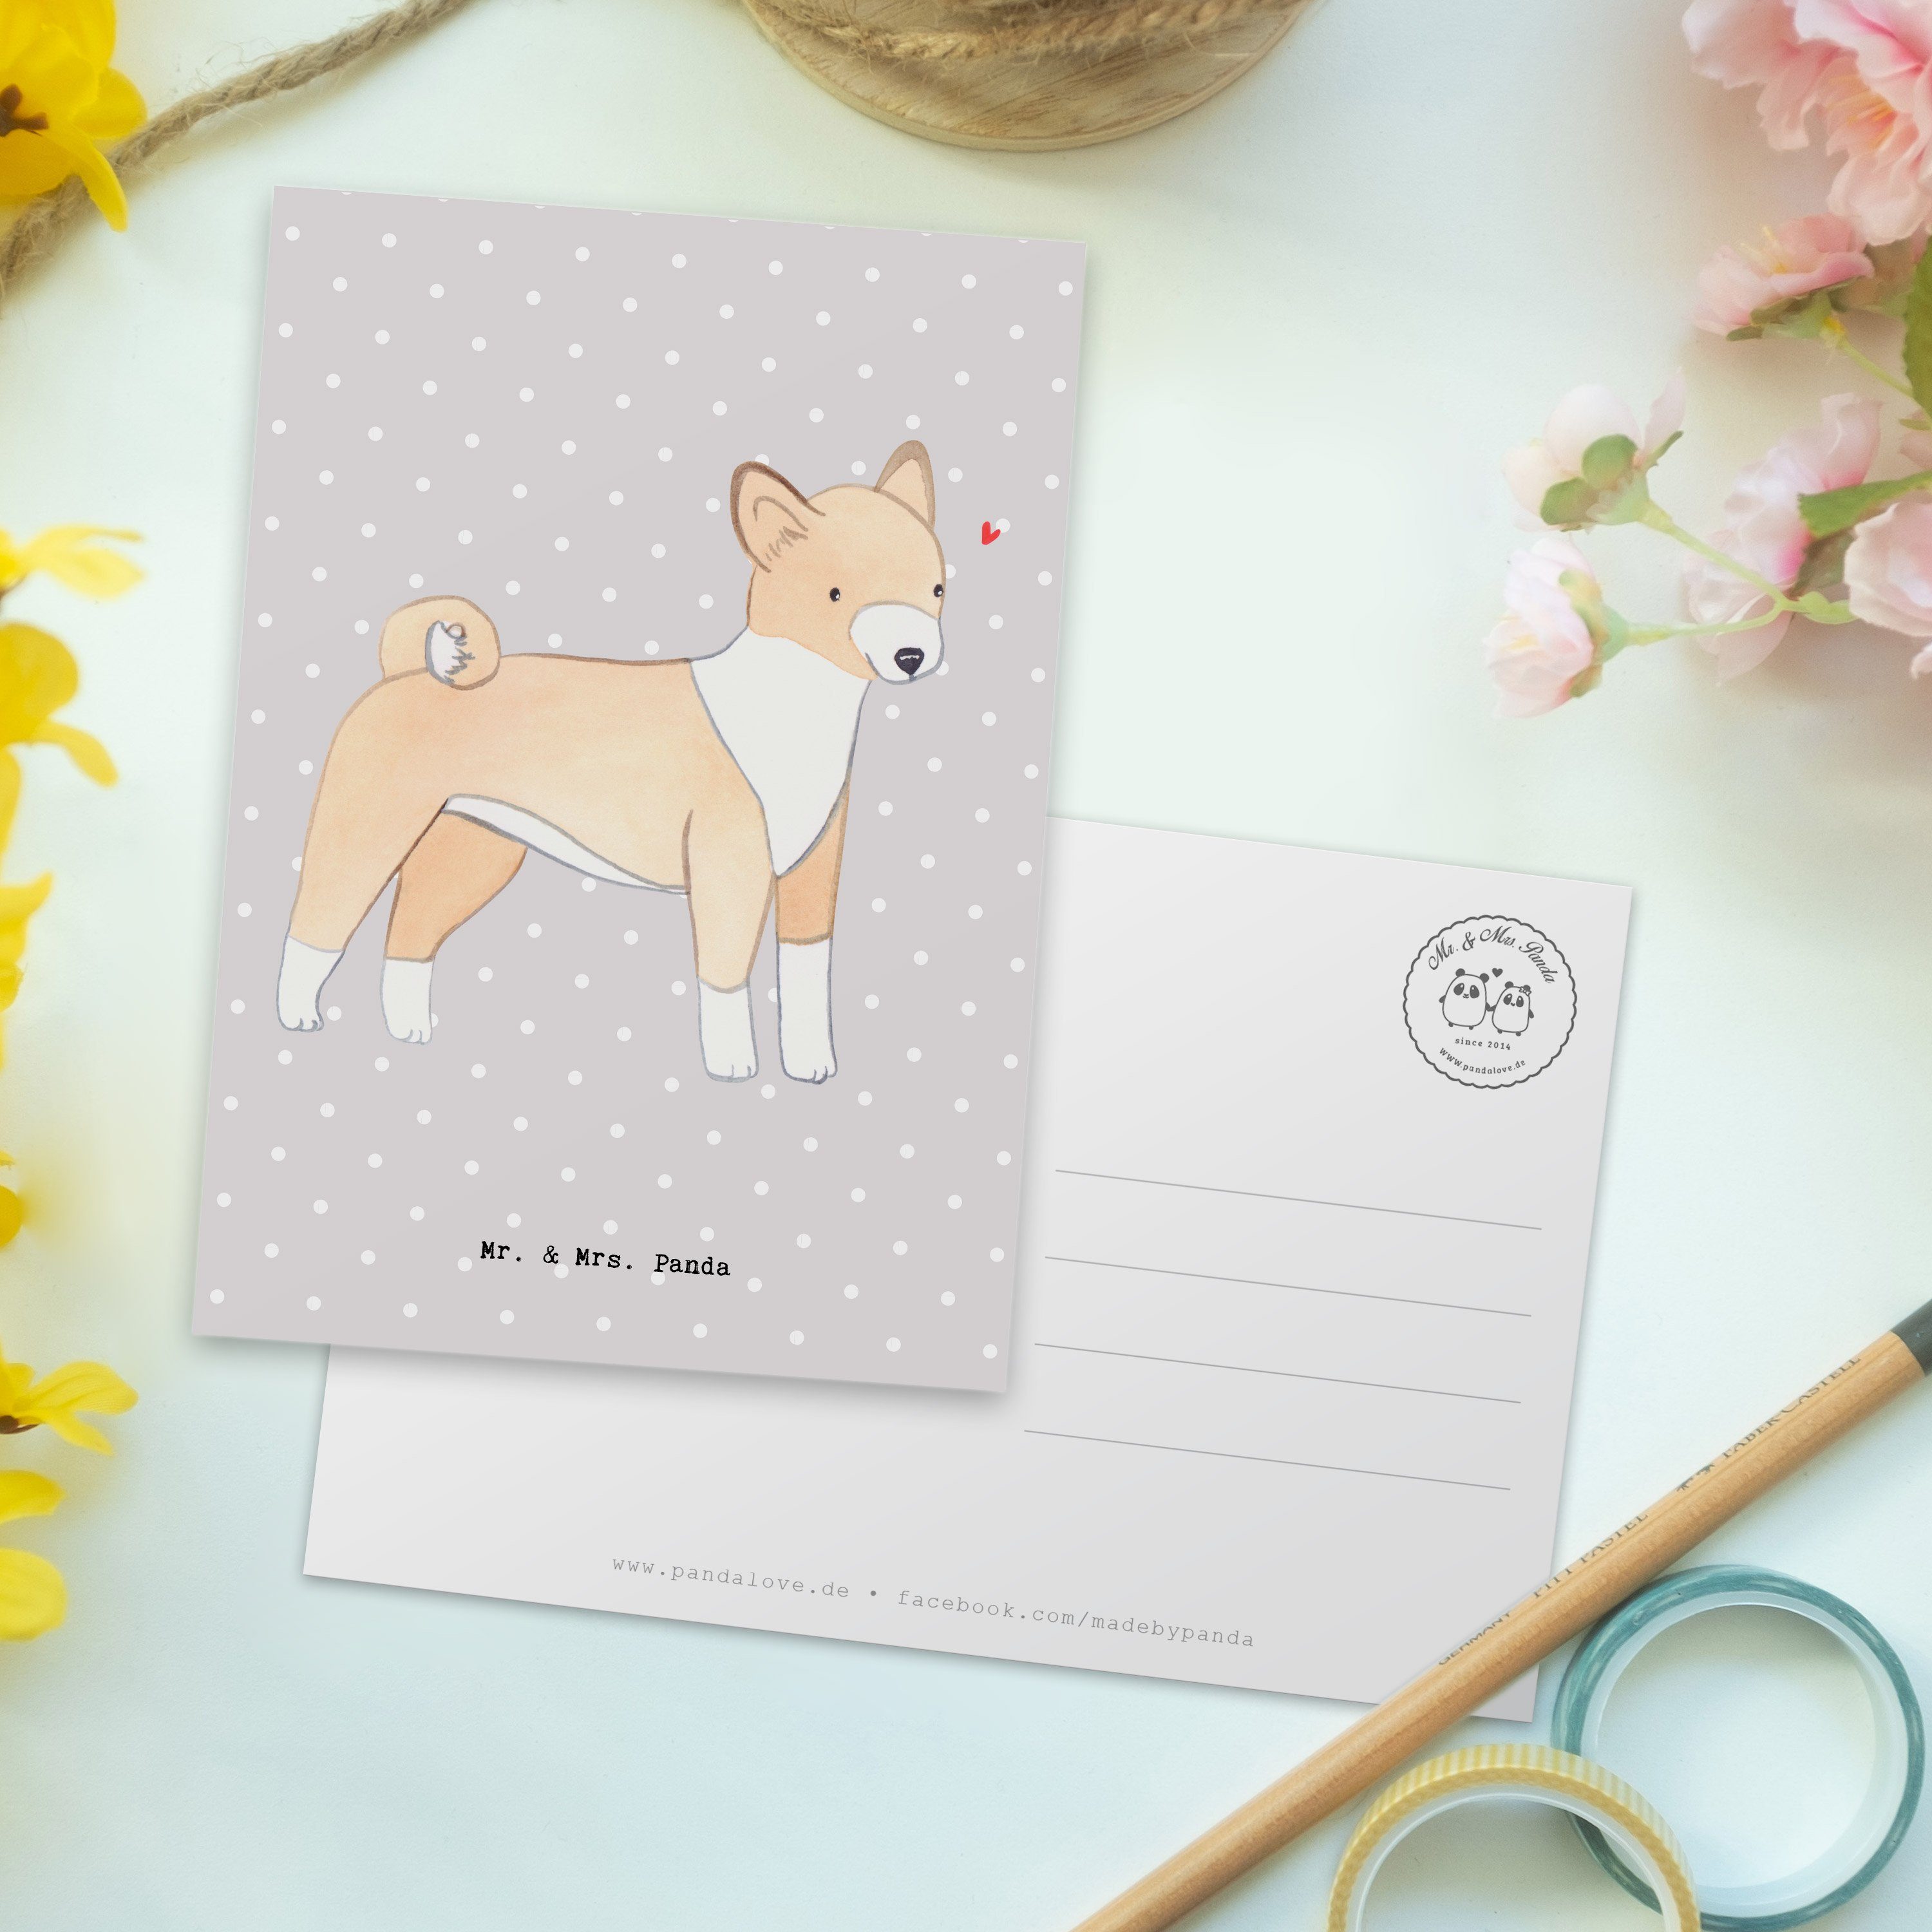 Panda Mrs. Pastell Basenji Kart - Hund, Mr. Postkarte & Grußkarte, Geschenk, Grau - Lebensretter